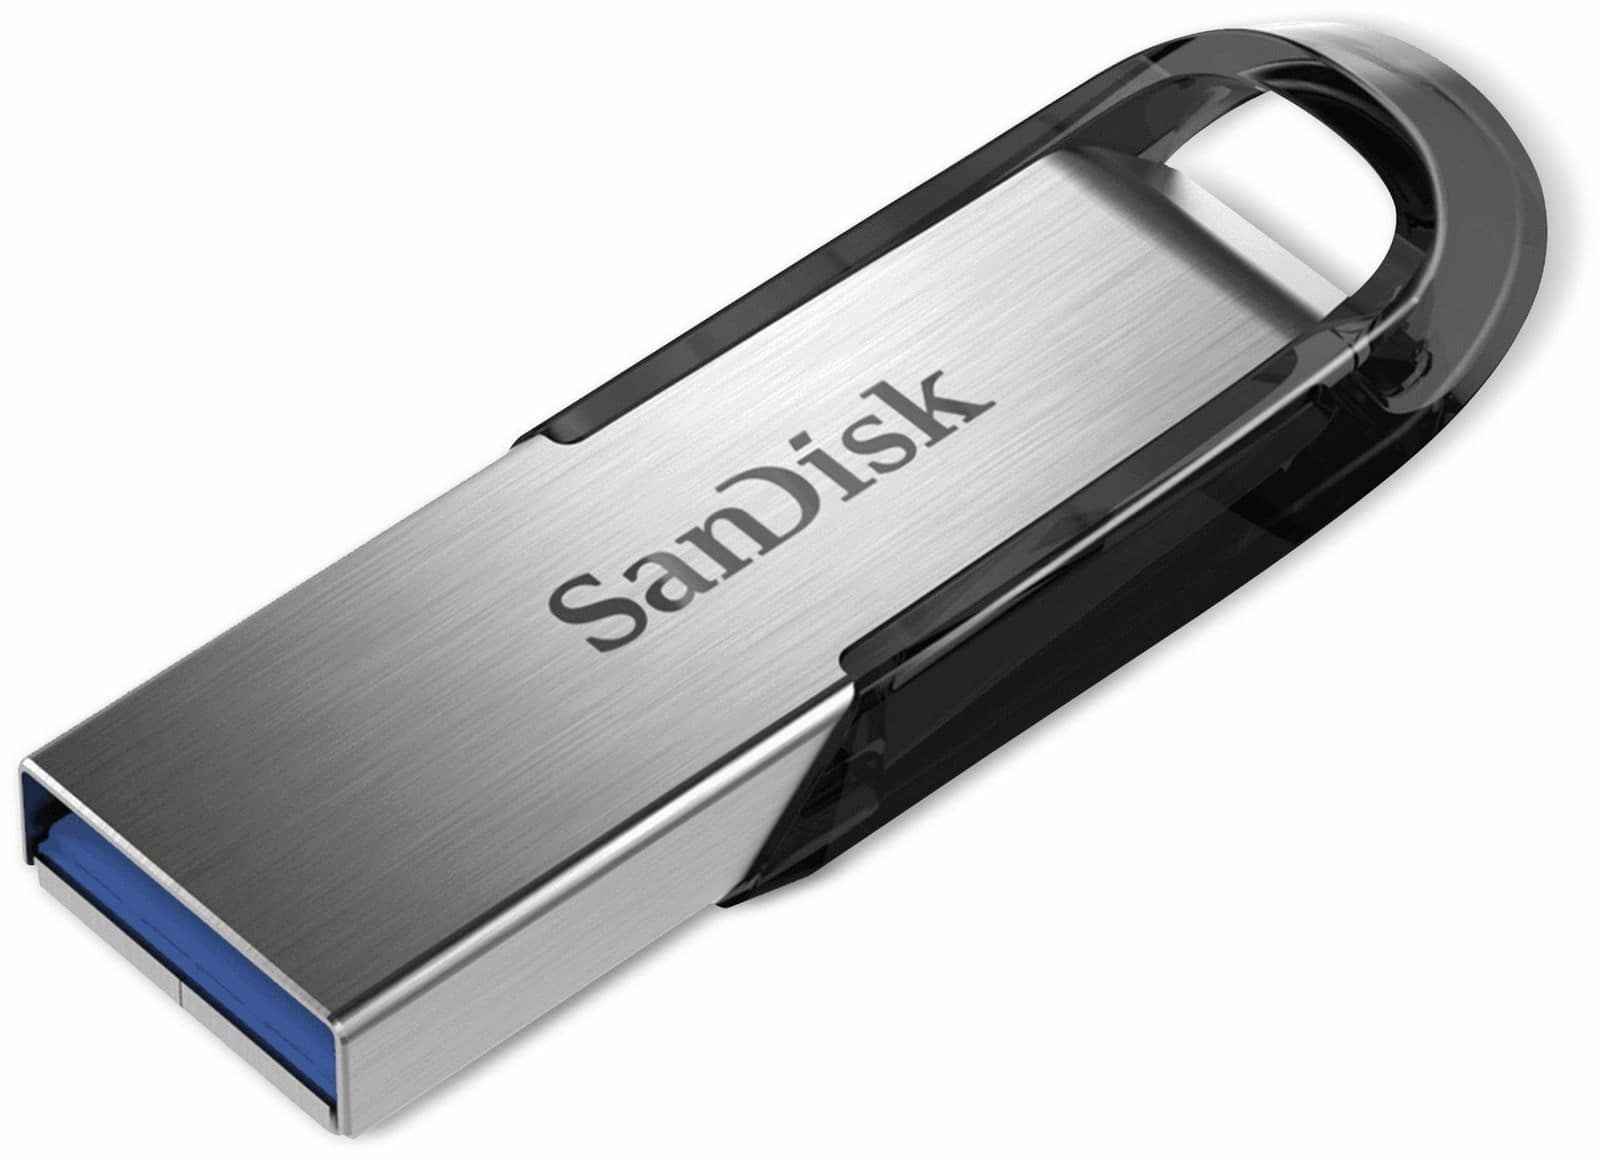 25x Sandisk Ultra Flair 128gb Usb 3.0 Flash Drive, Kostenloser Versand Am NÄchsten Tag